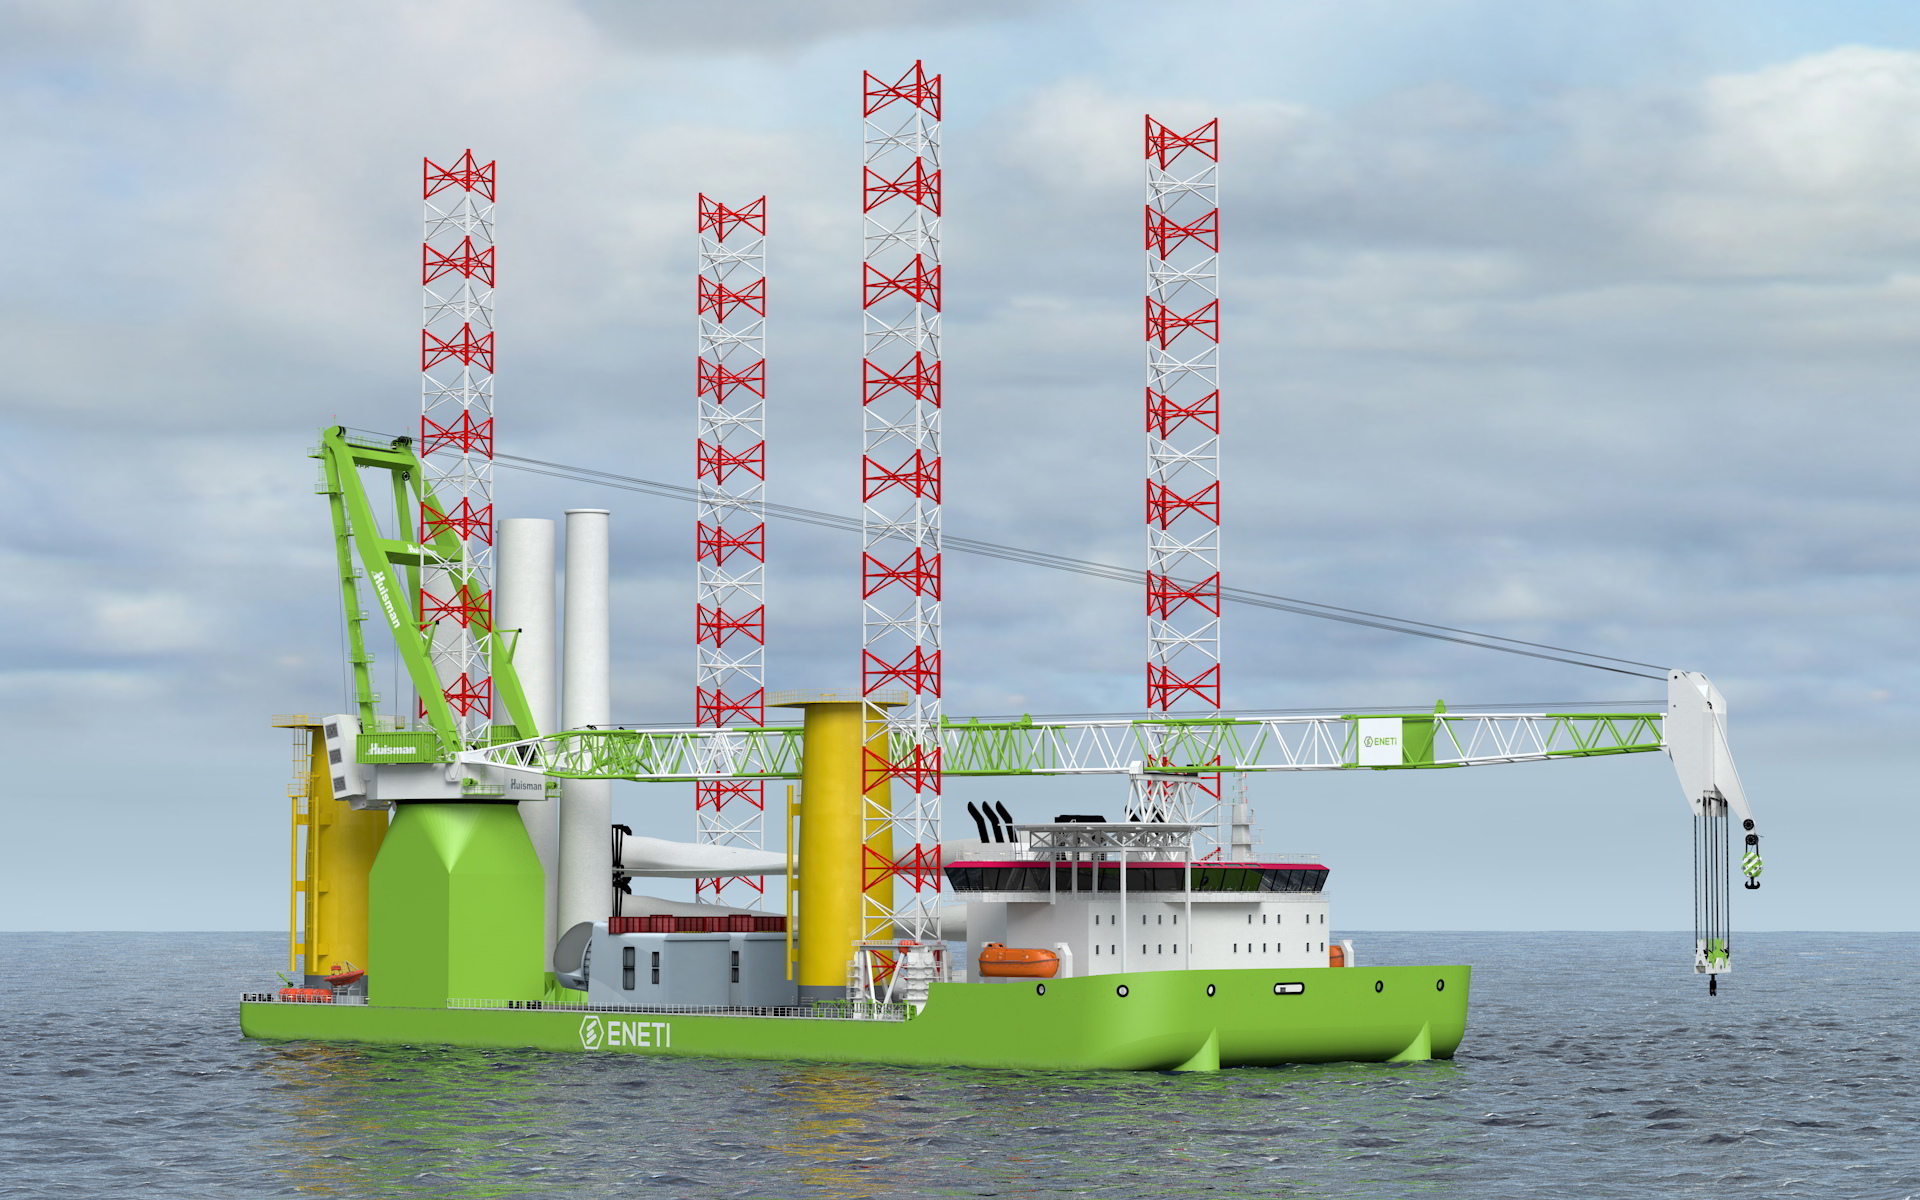 Eneti's wind turbine installation vessel, or WTIV